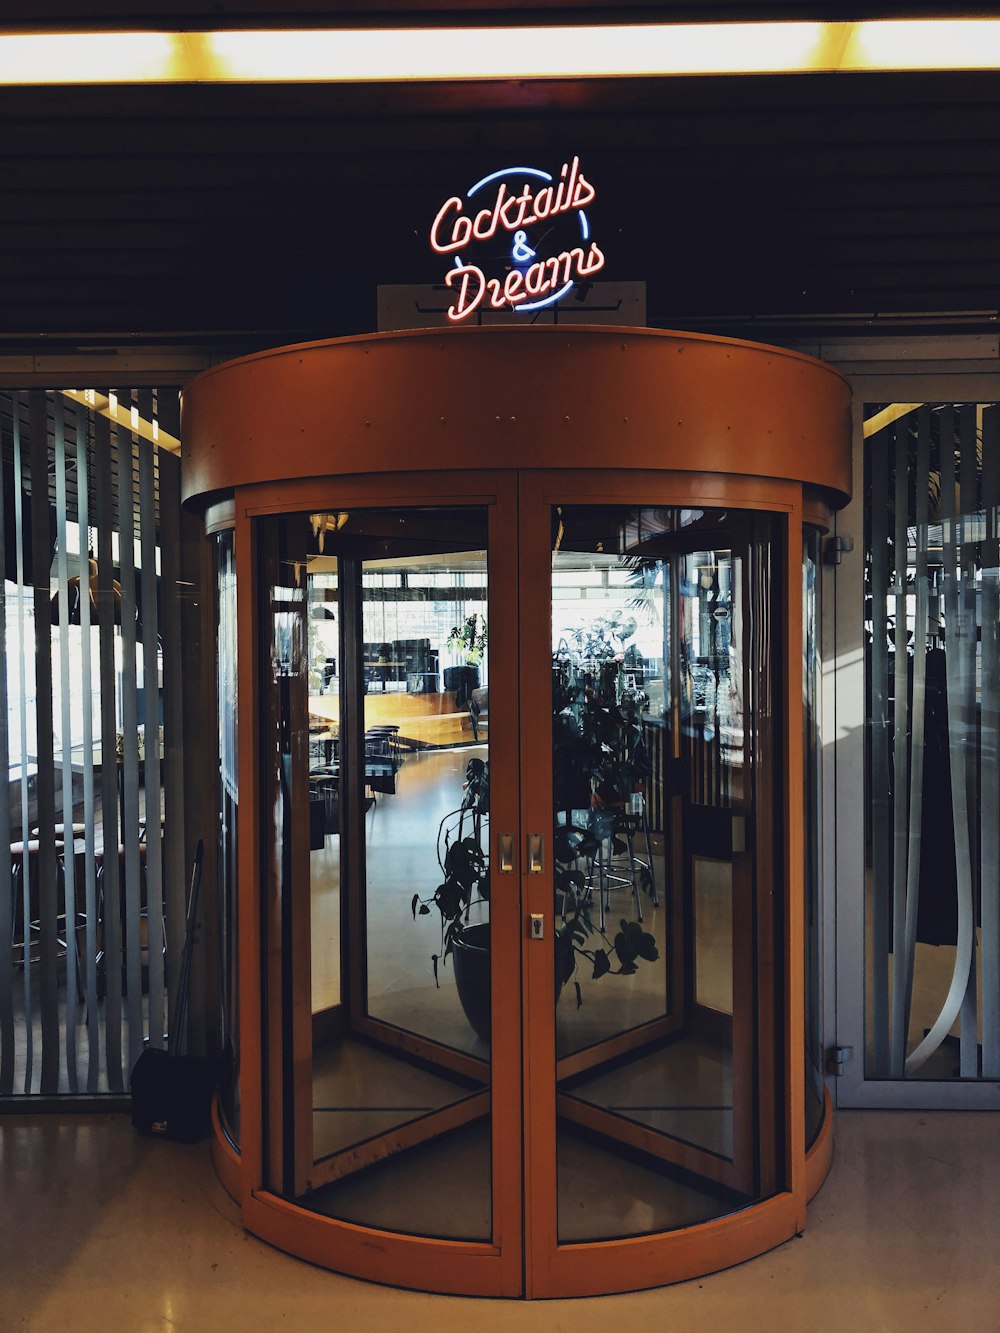 Cocktails & Dreams entrance